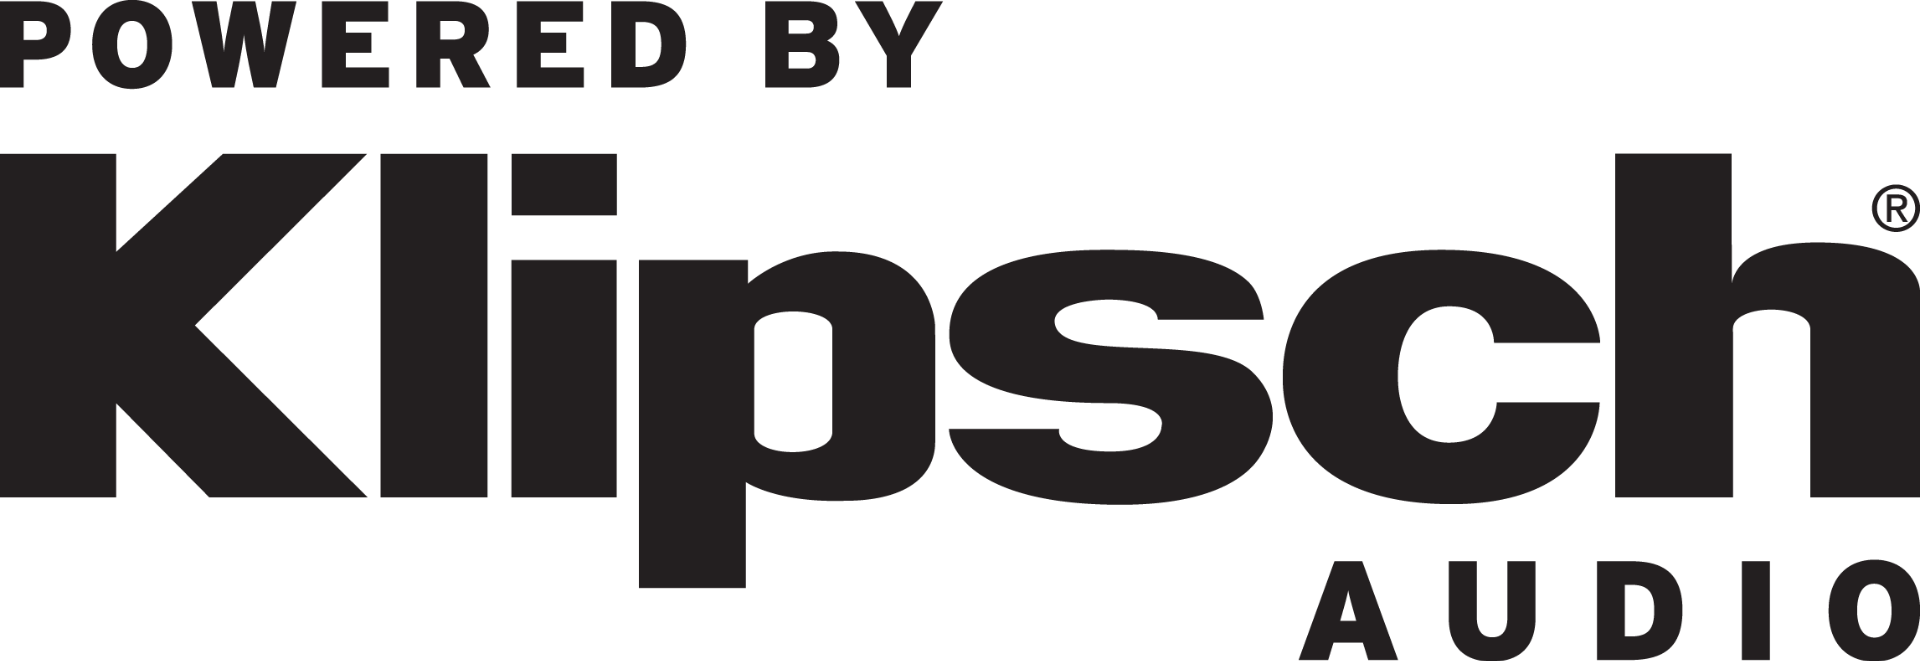 Klipsch logo.png